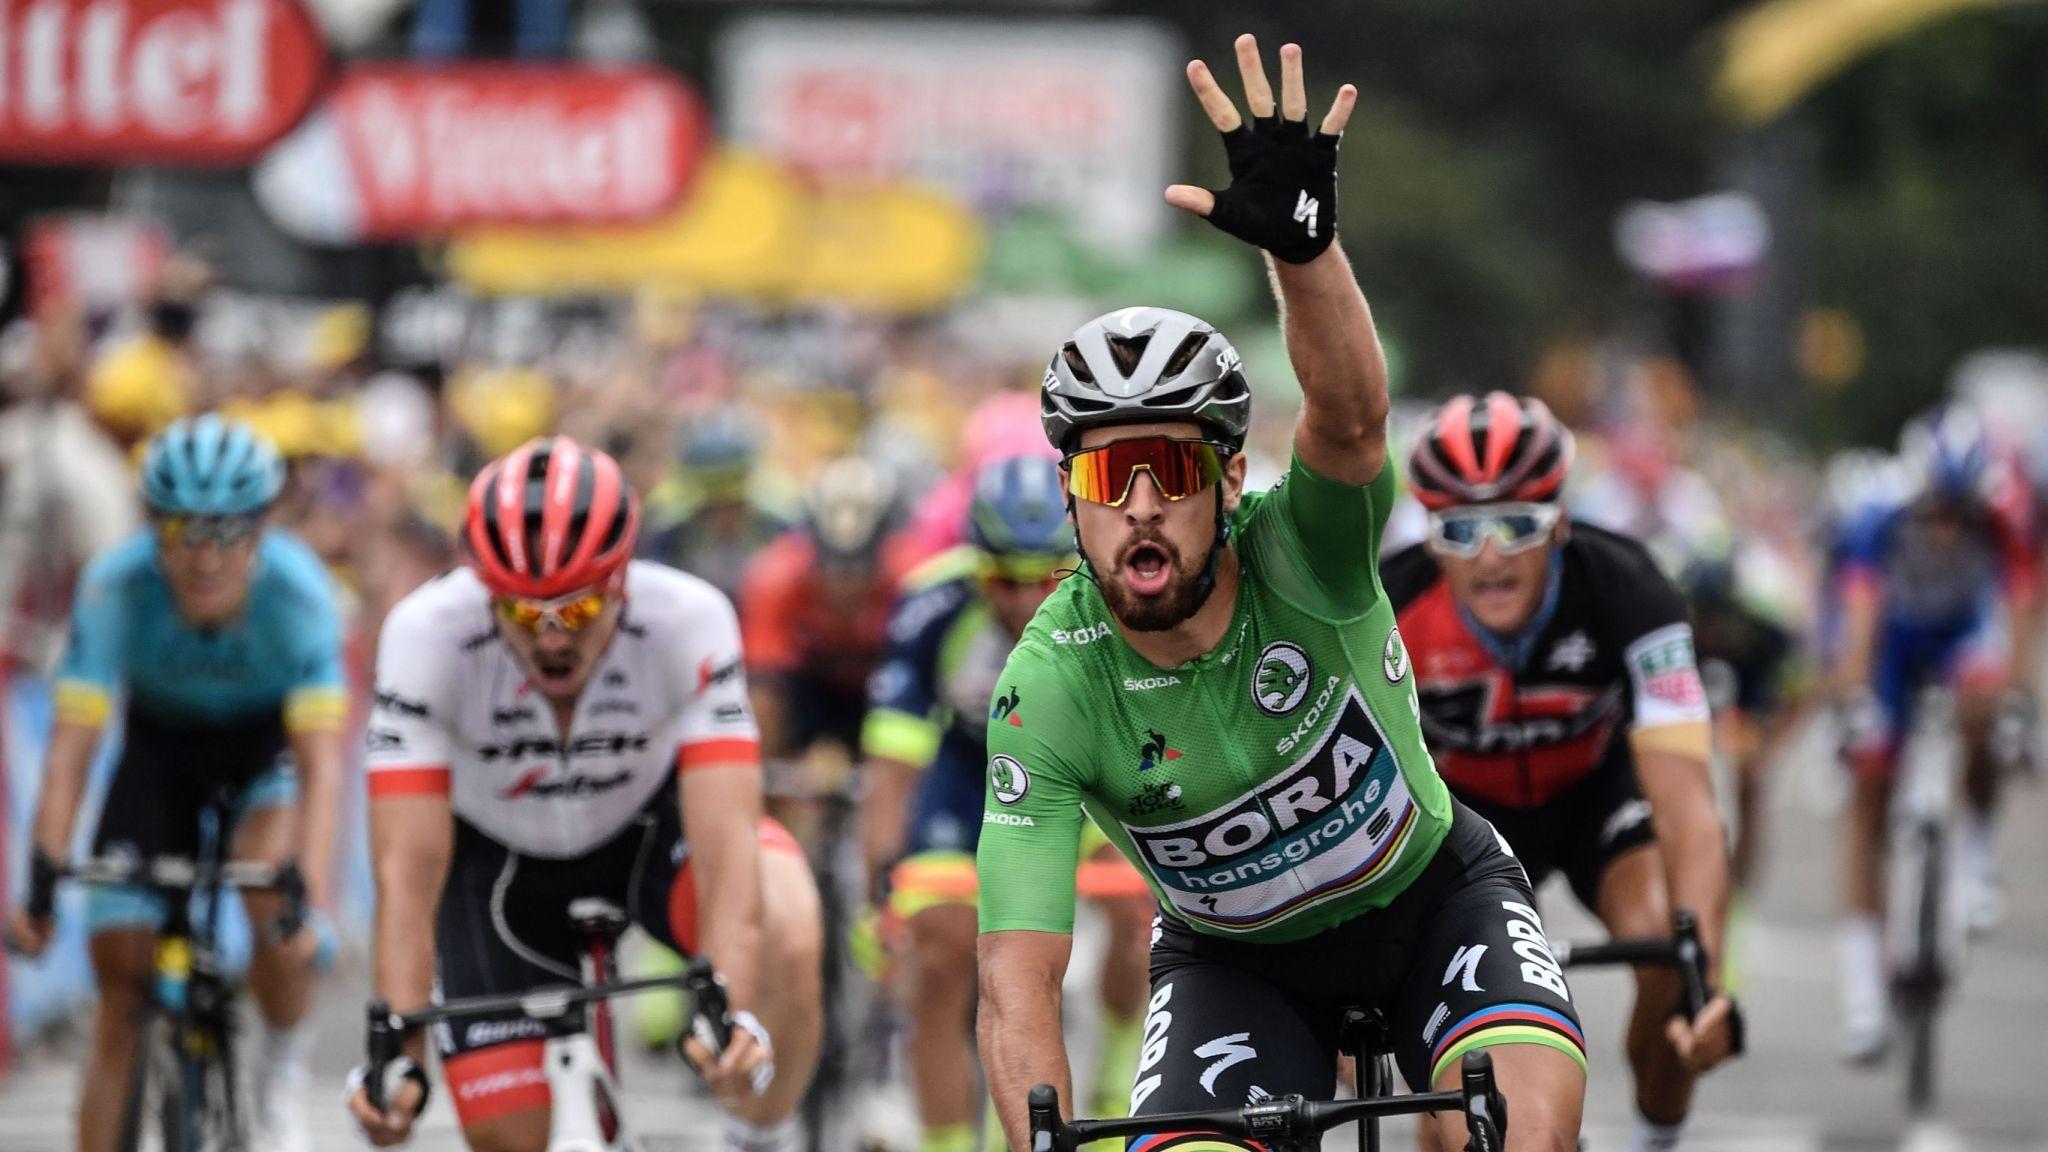 Peter Sagan sprints to third win of 2018 Tour de France as